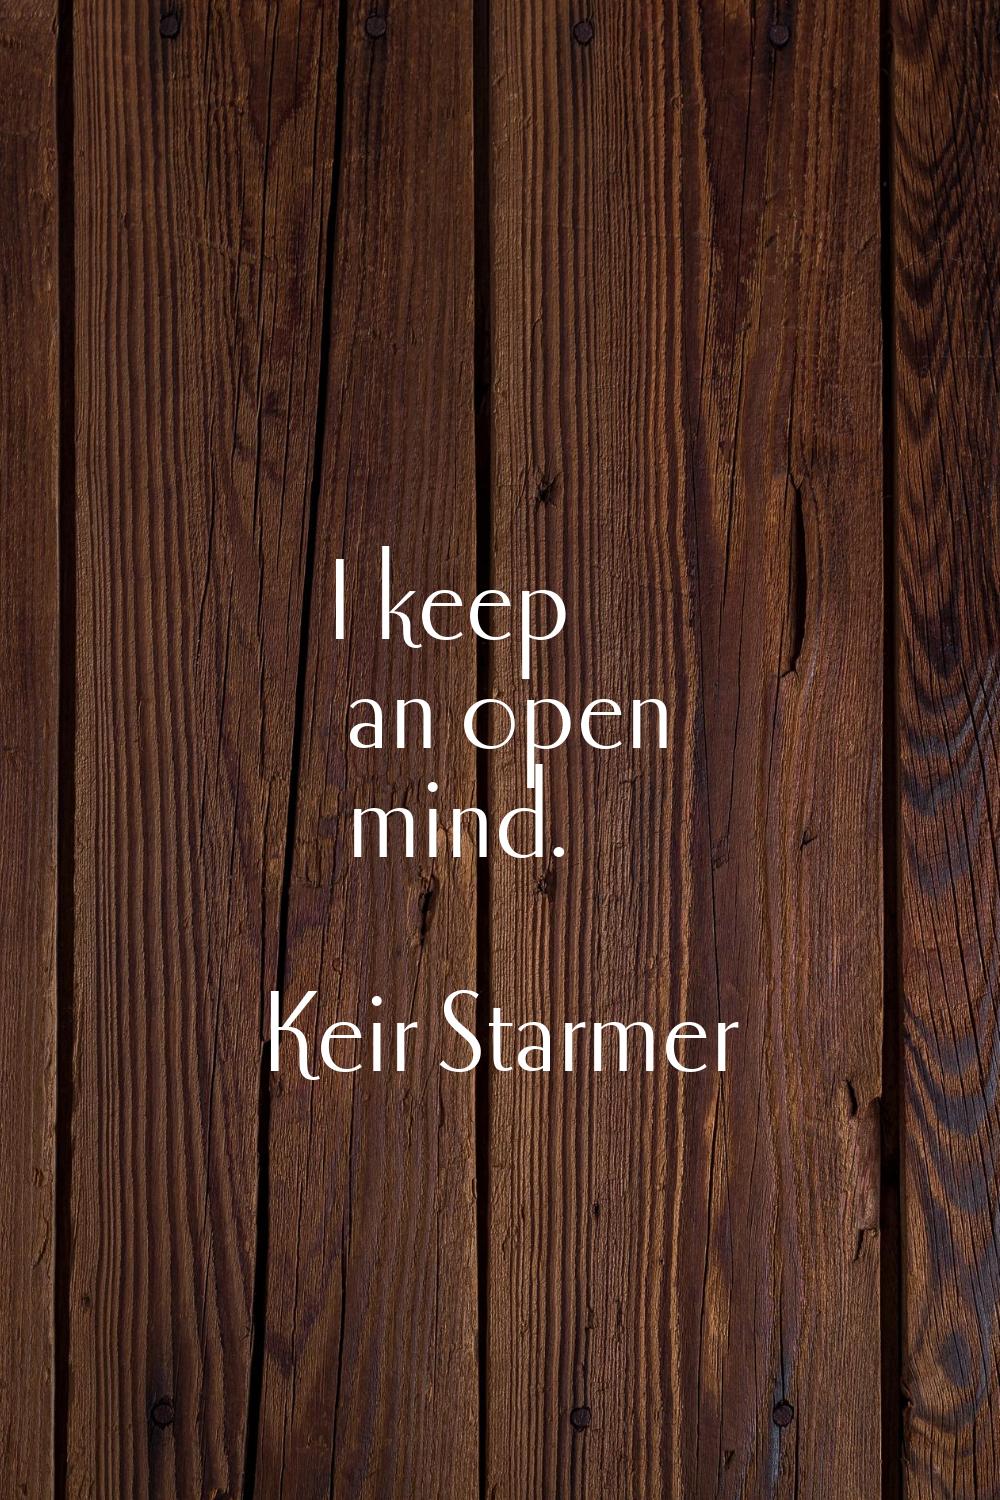 I keep an open mind.